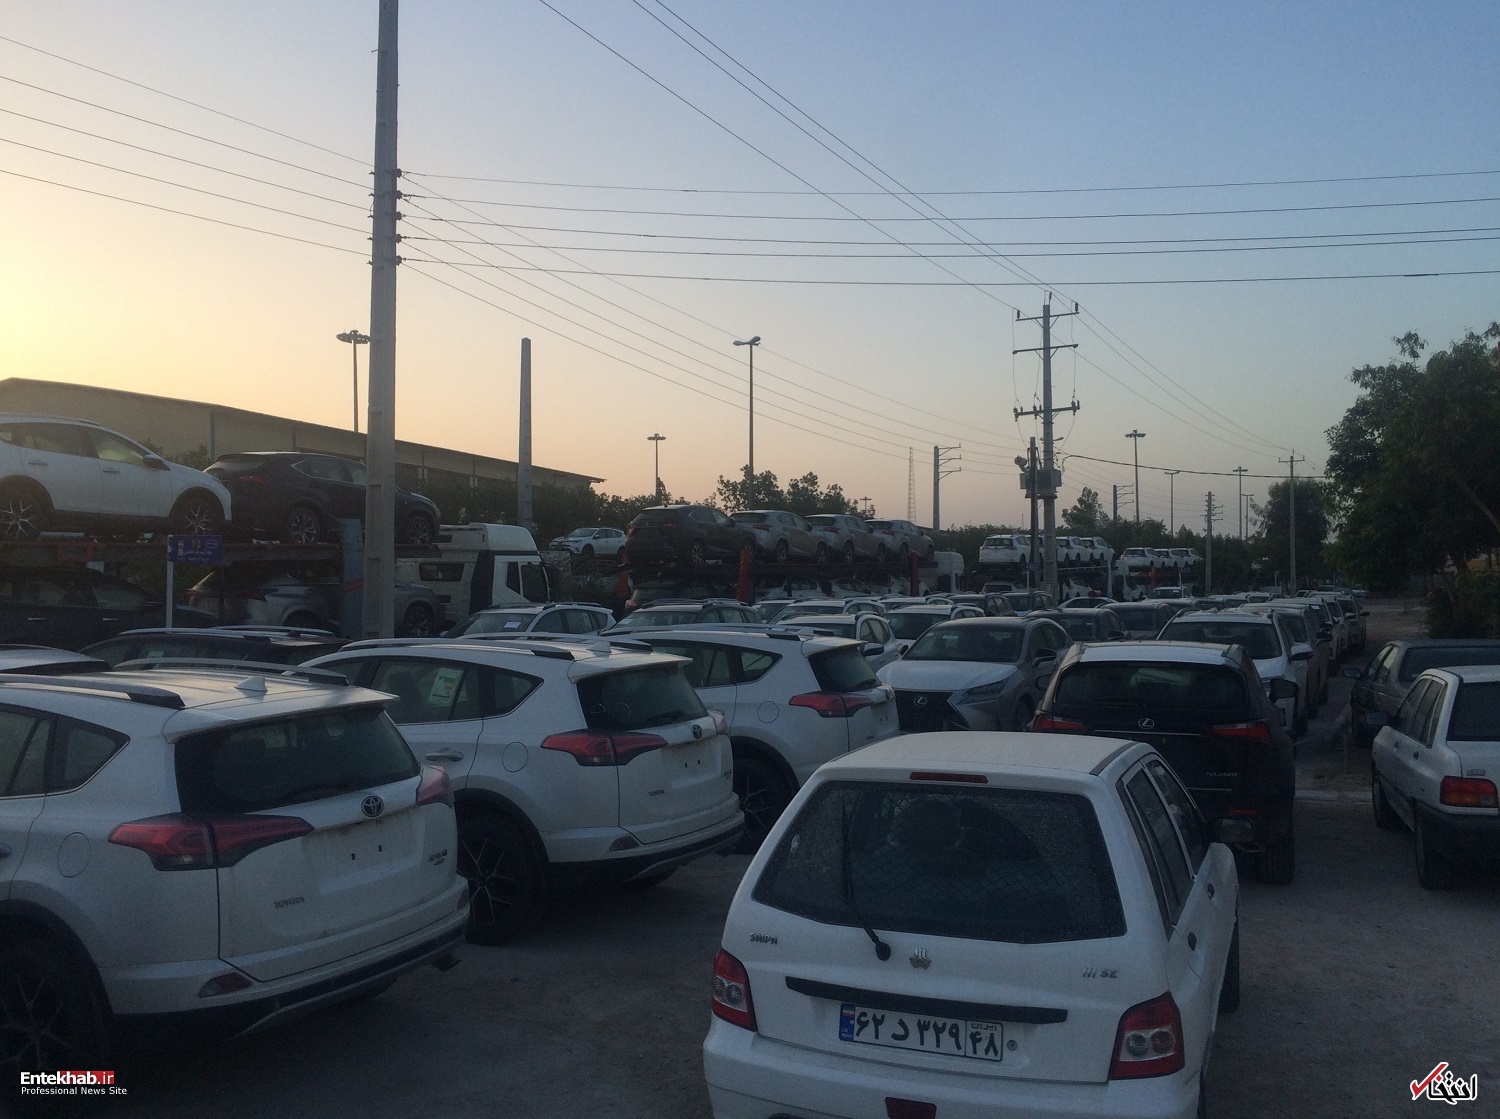 فیلم/ خروج شبانه خودروهای وارداتی از گمرک بوشهر/ توقف محموله توسط پلیس